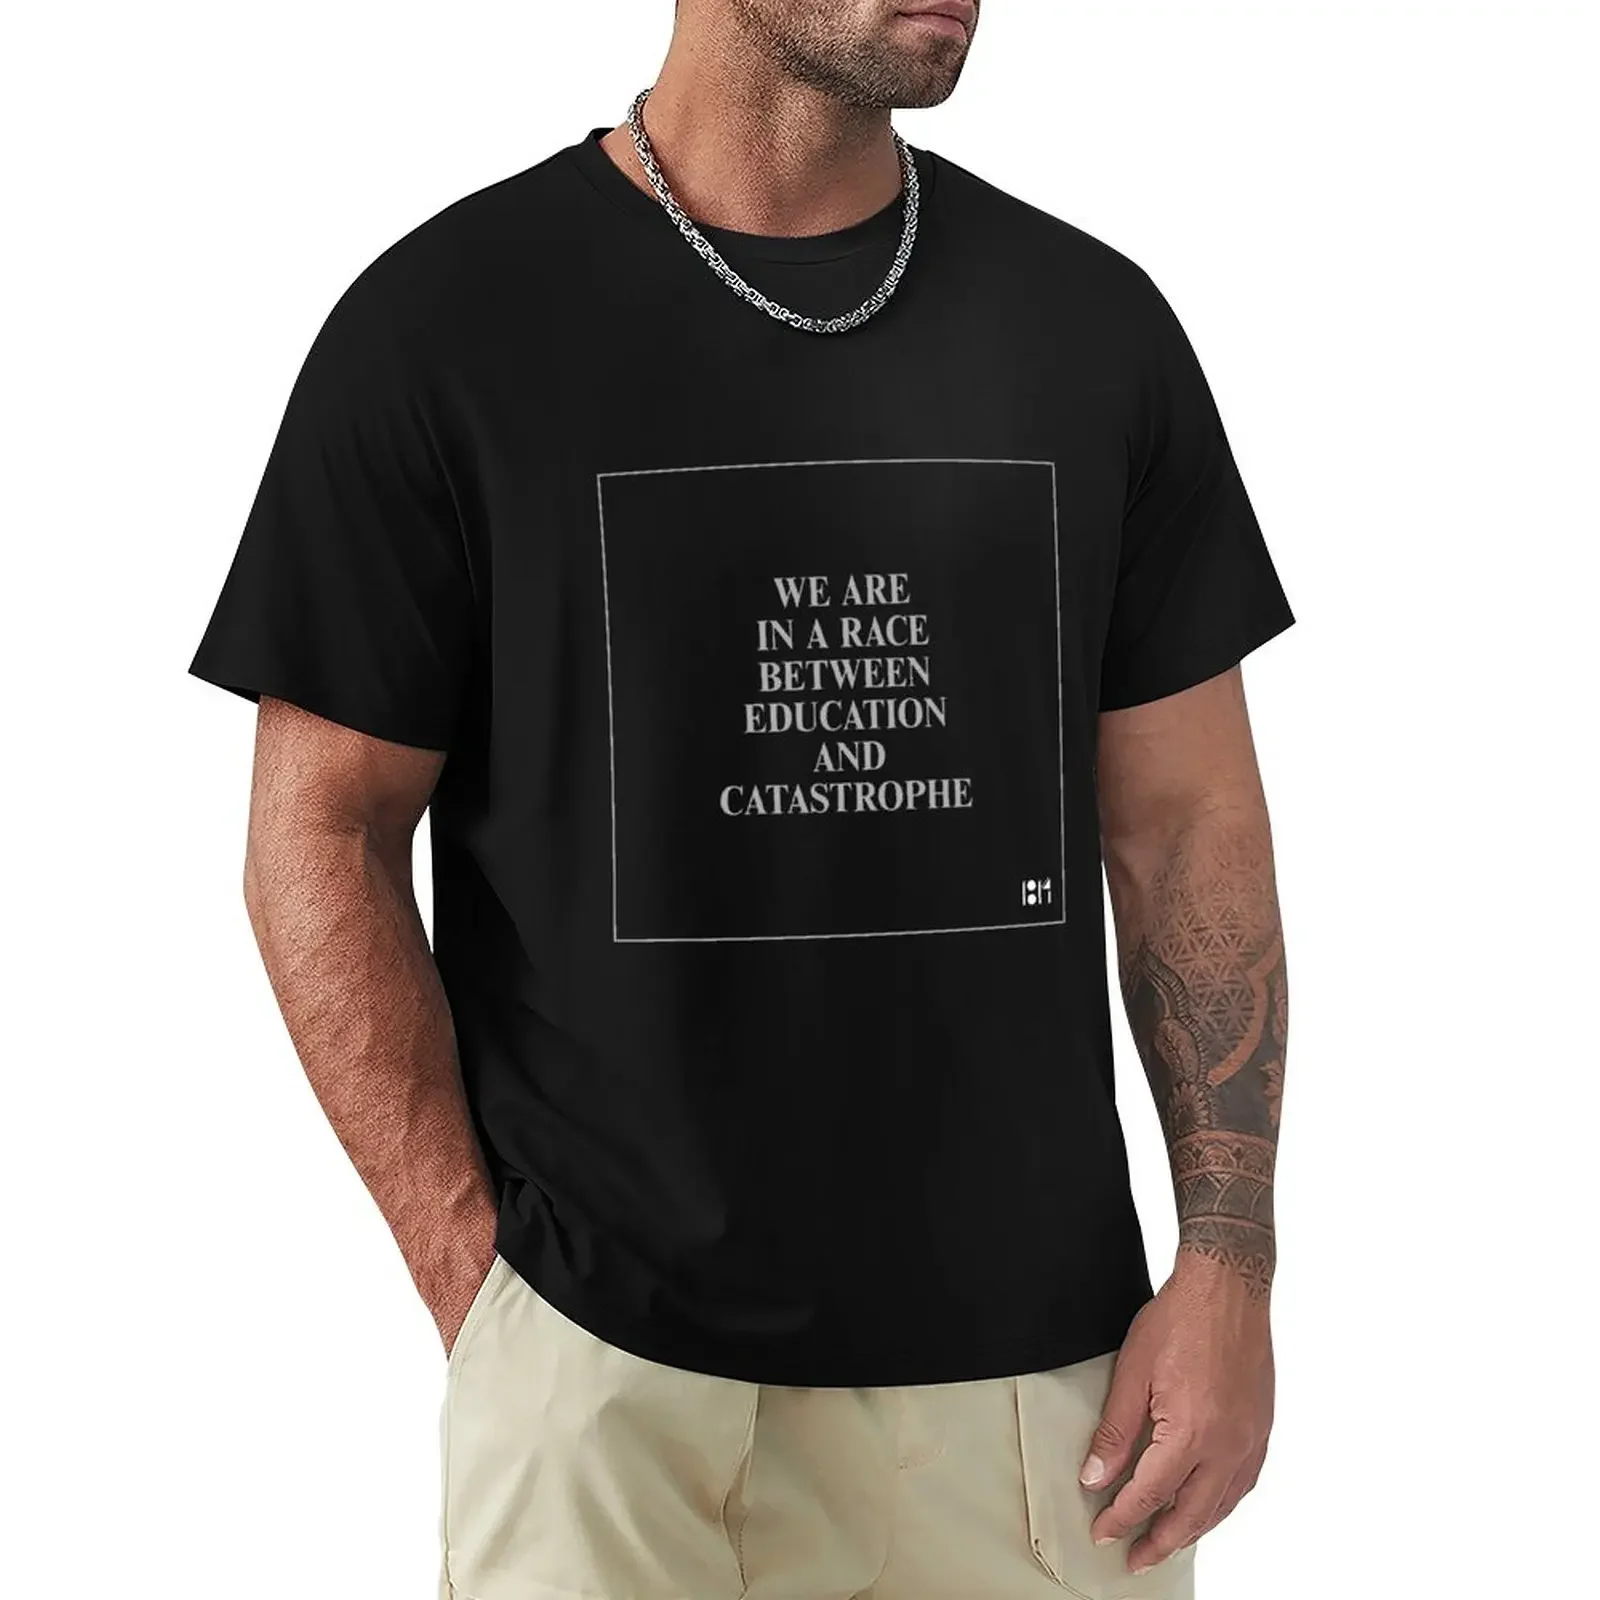 

Мужская футболка с графическим принтом, в стиле оверсайз